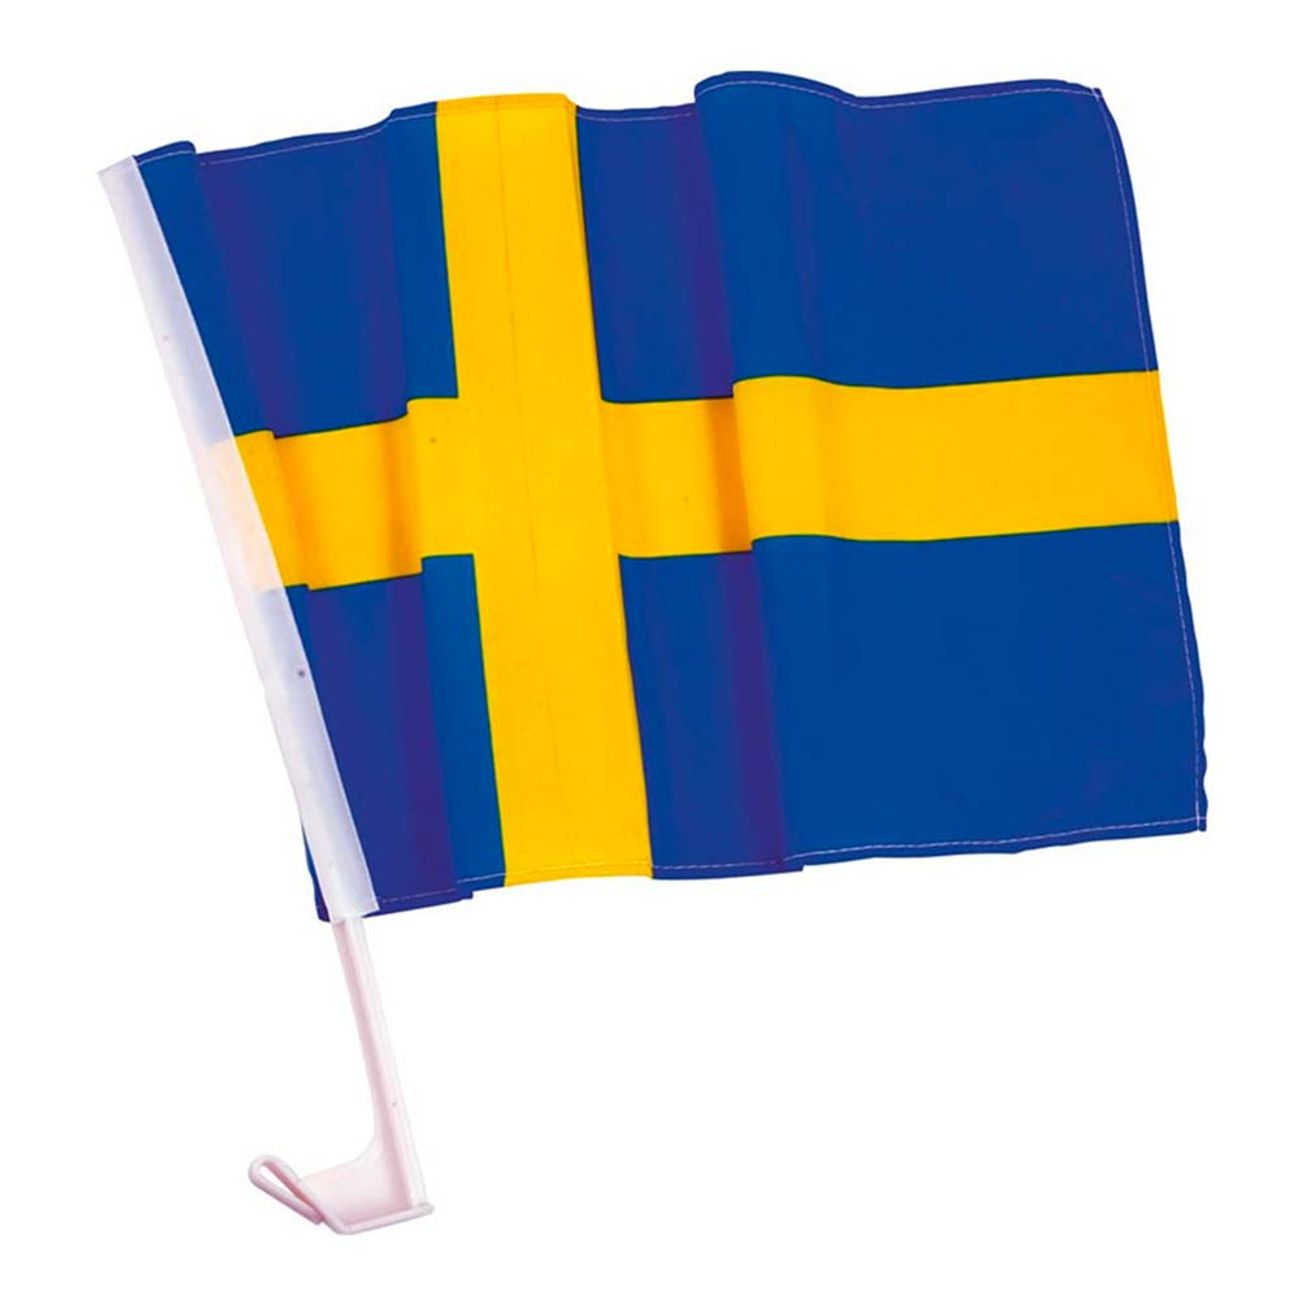 bilflagga-svenska-flaggan-91946-2